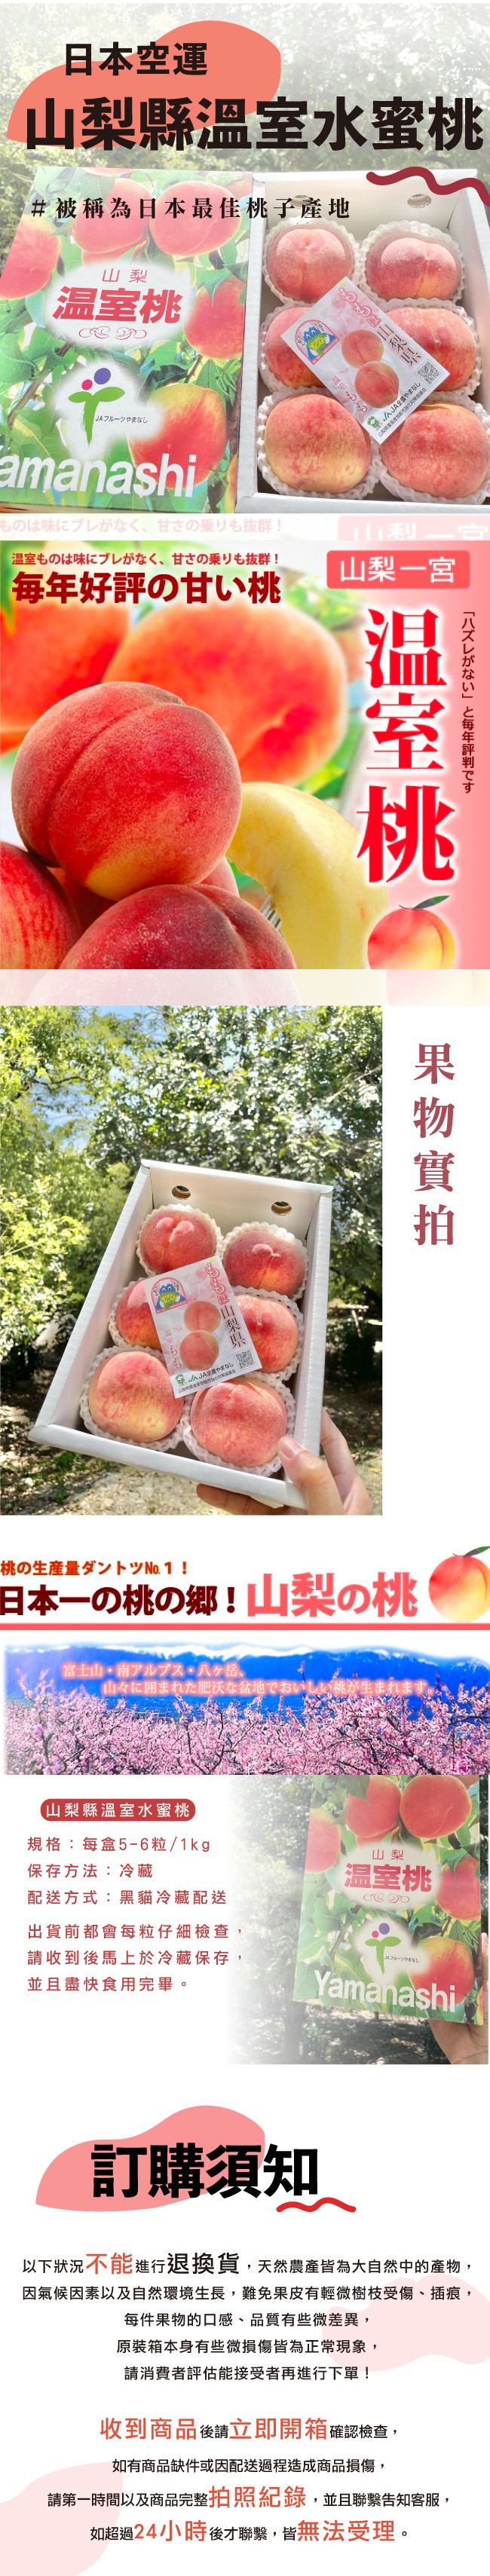 水果狼 日本空運山梨溫室水蜜桃5 6顆 盒1kg 原裝免運日本水蜜桃1kg 盒 Ihergo愛合購